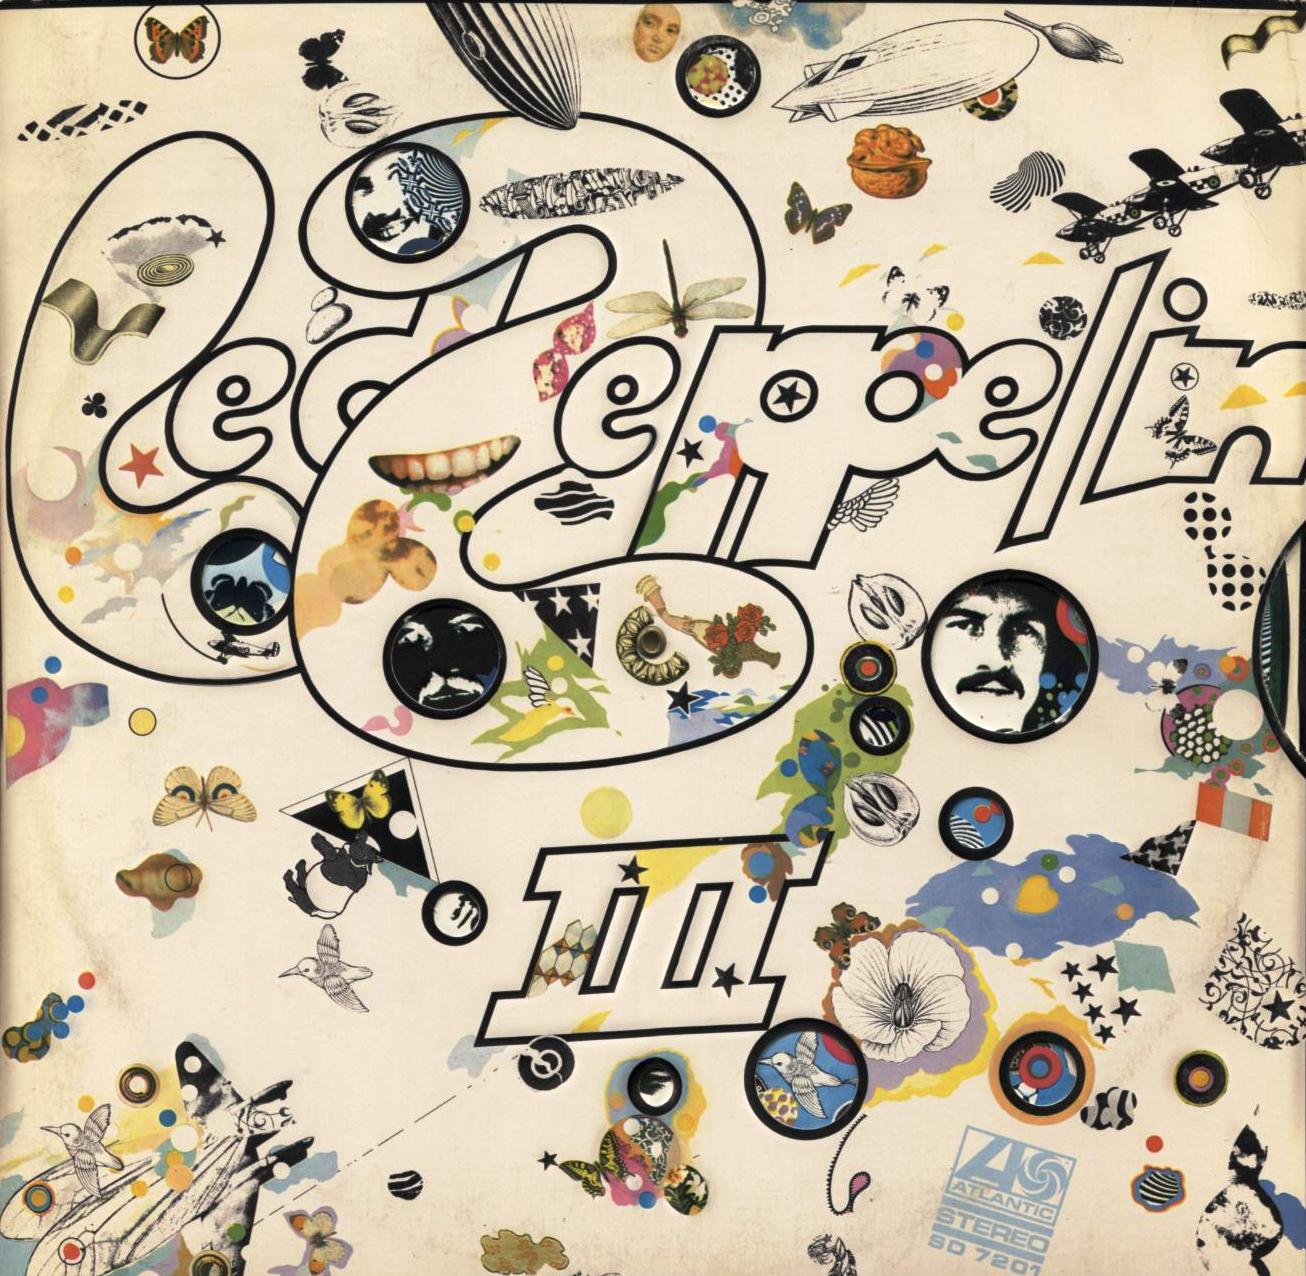 Led zeppelin iii led zeppelin. Led Zeppelin III. Led Zeppelin "III (2cd)". Led Zeppelin III - 1970. Led Zeppelin III обложка.